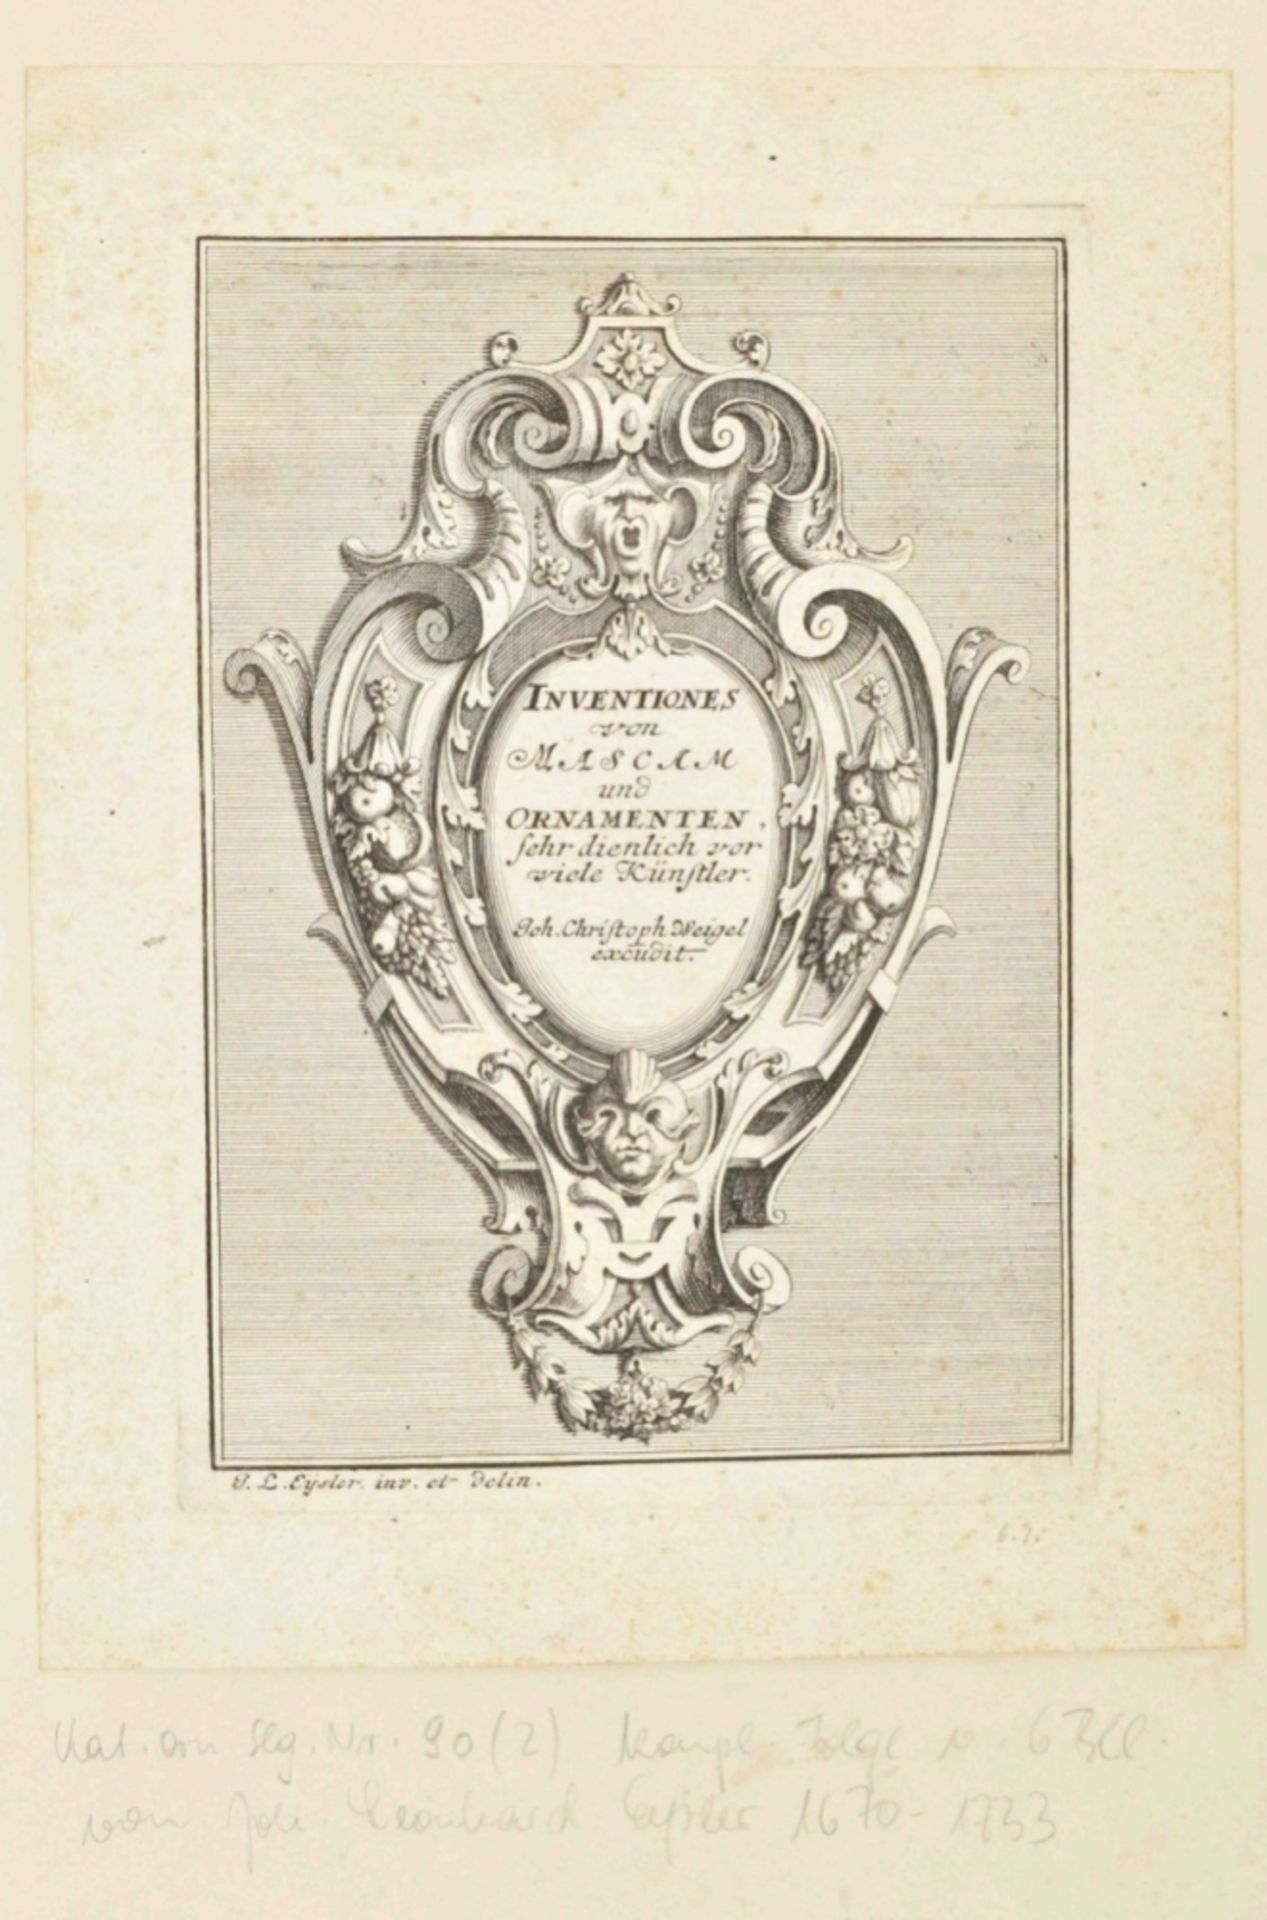 [Ornaments] Johann Leoard Eysler (1670-1733). "Inventiones von Mascam und Ornamenten, - Image 2 of 5